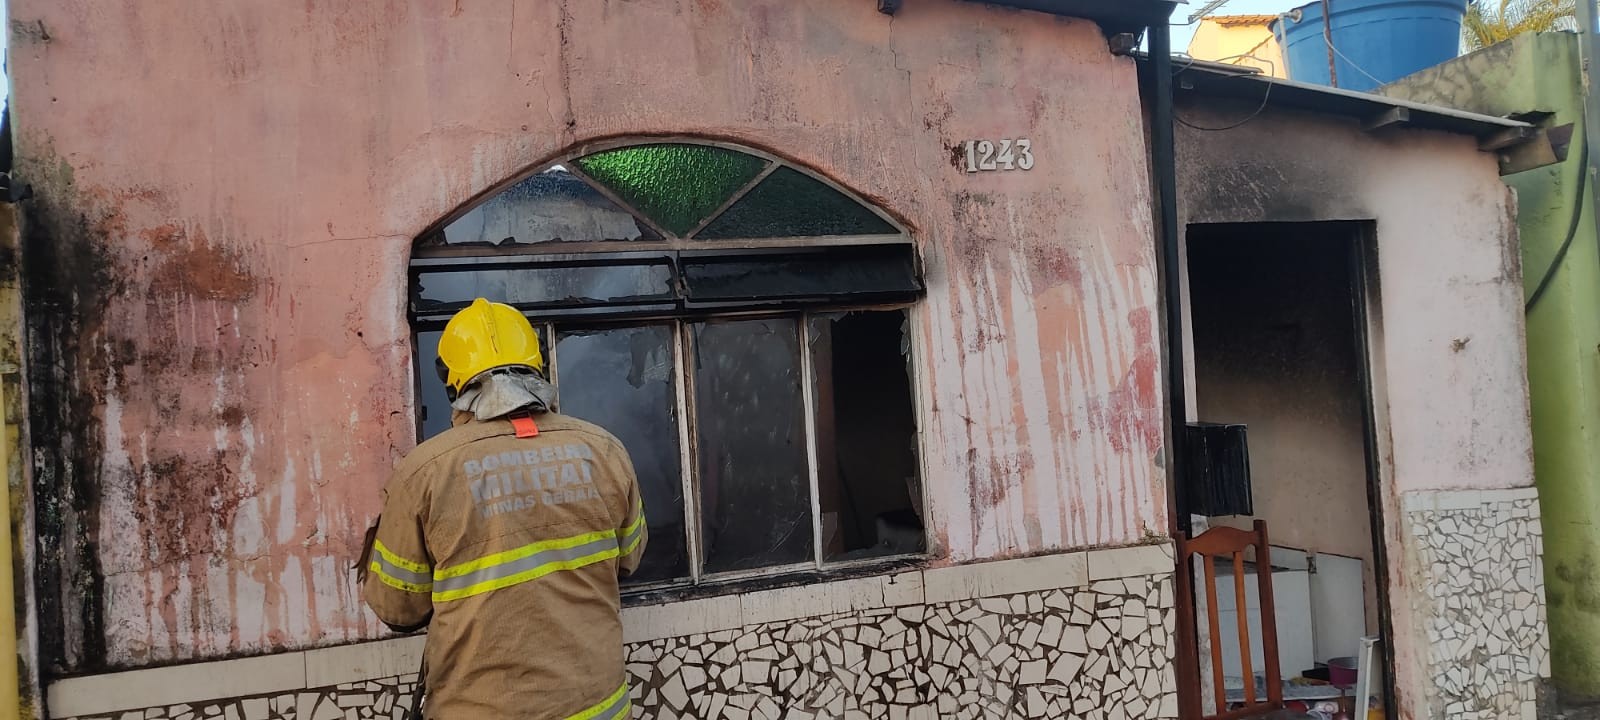 Após briga com namorado, mulher coloca fogo na própria casa em Arcos